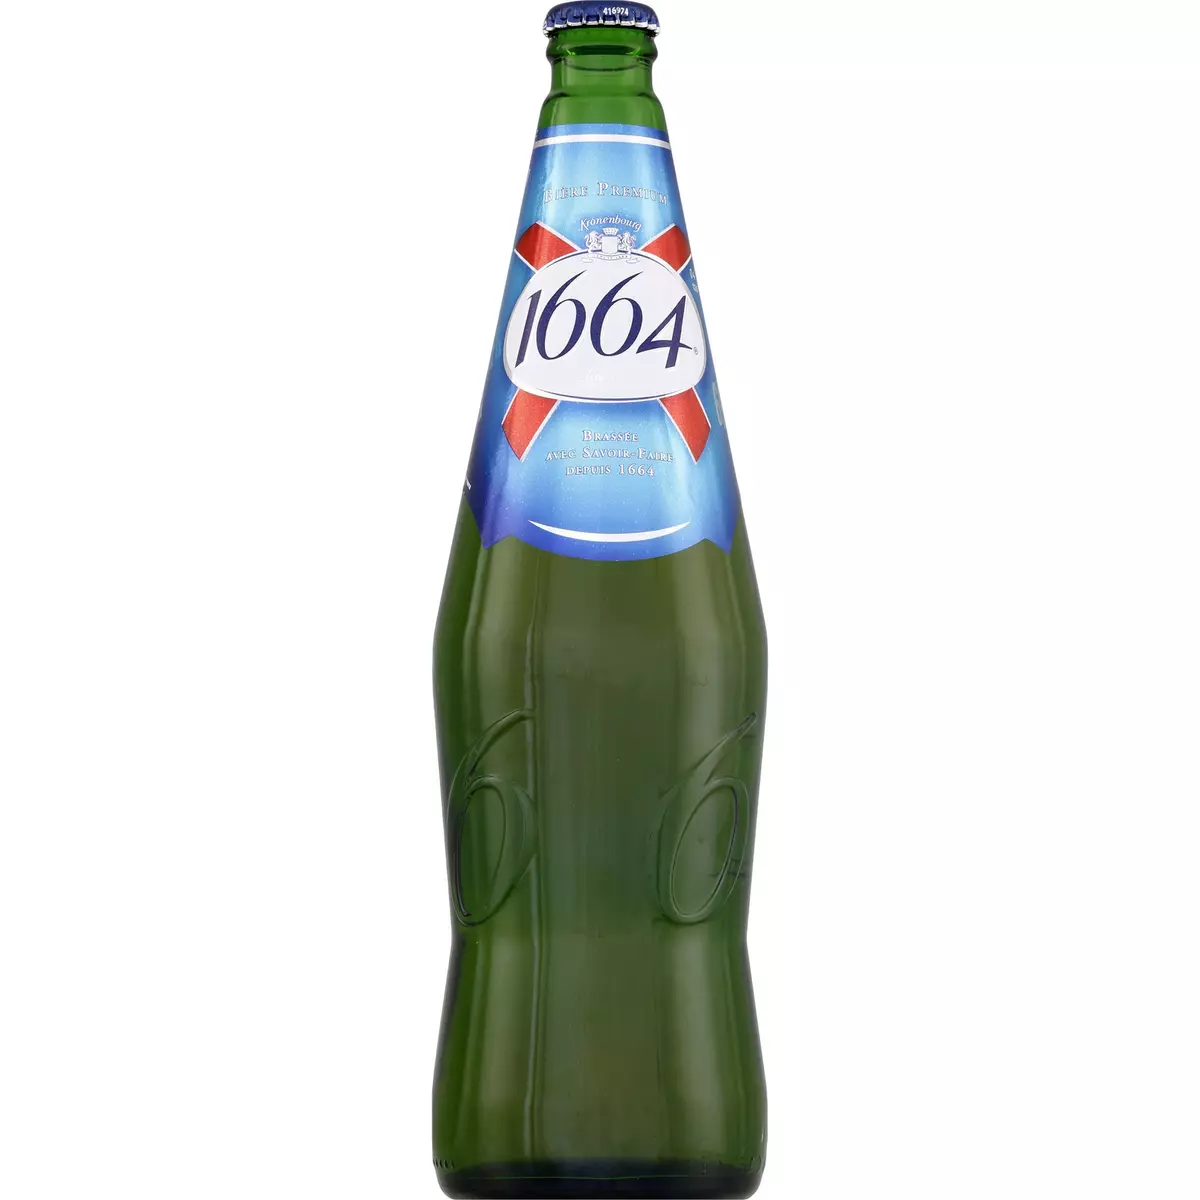 1664 Bière blonde premium 5,5%  75cl